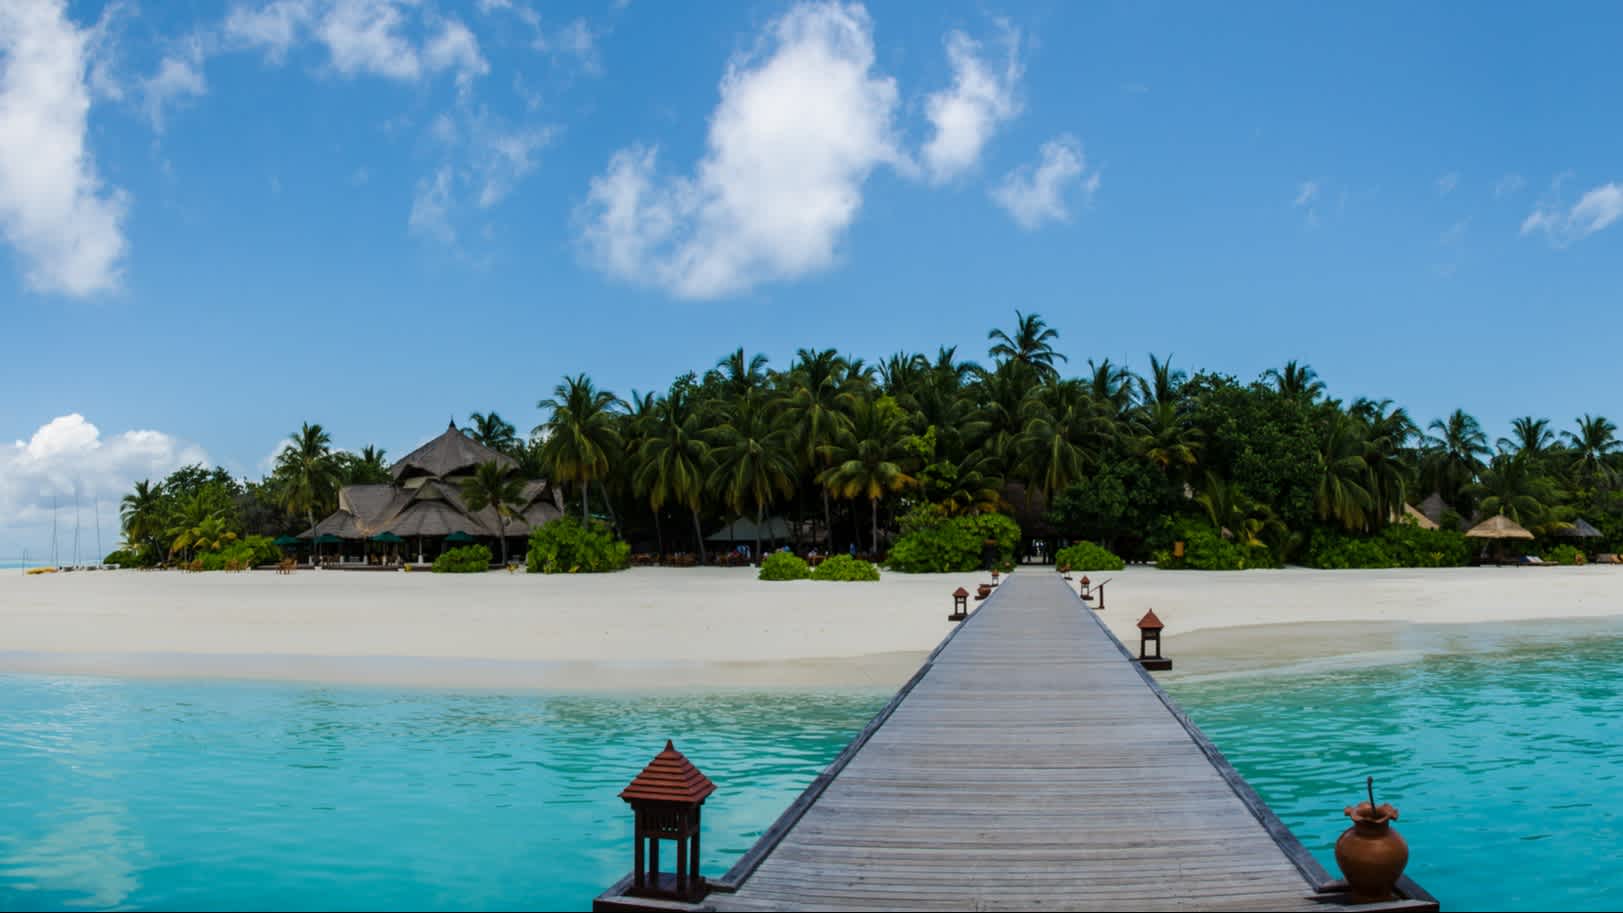 Passerelle en bois menant à une île tropicale avec une plage de sable blanc